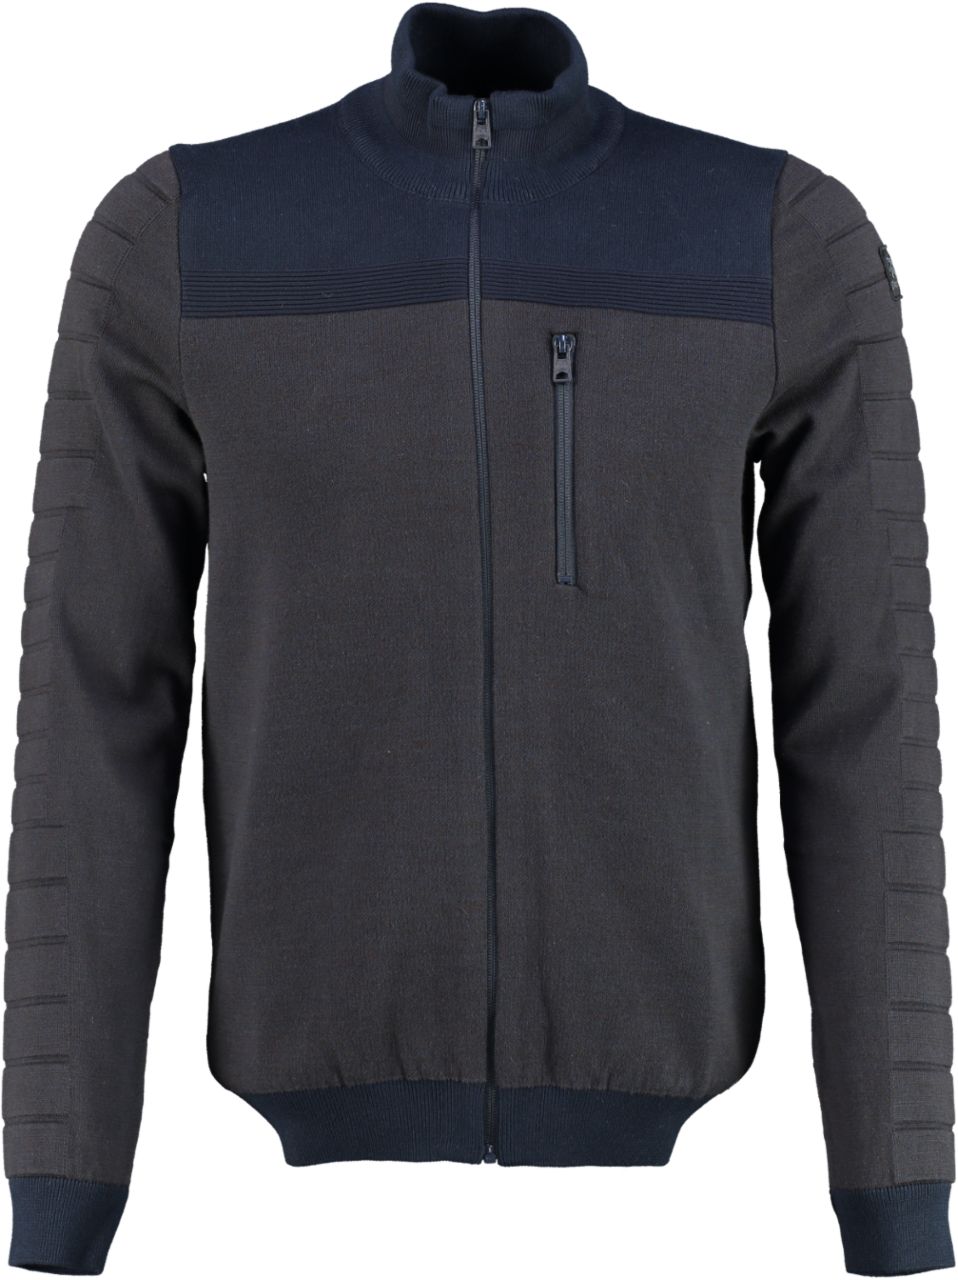 VanGuard Sweatvest Zip jacket cotton 